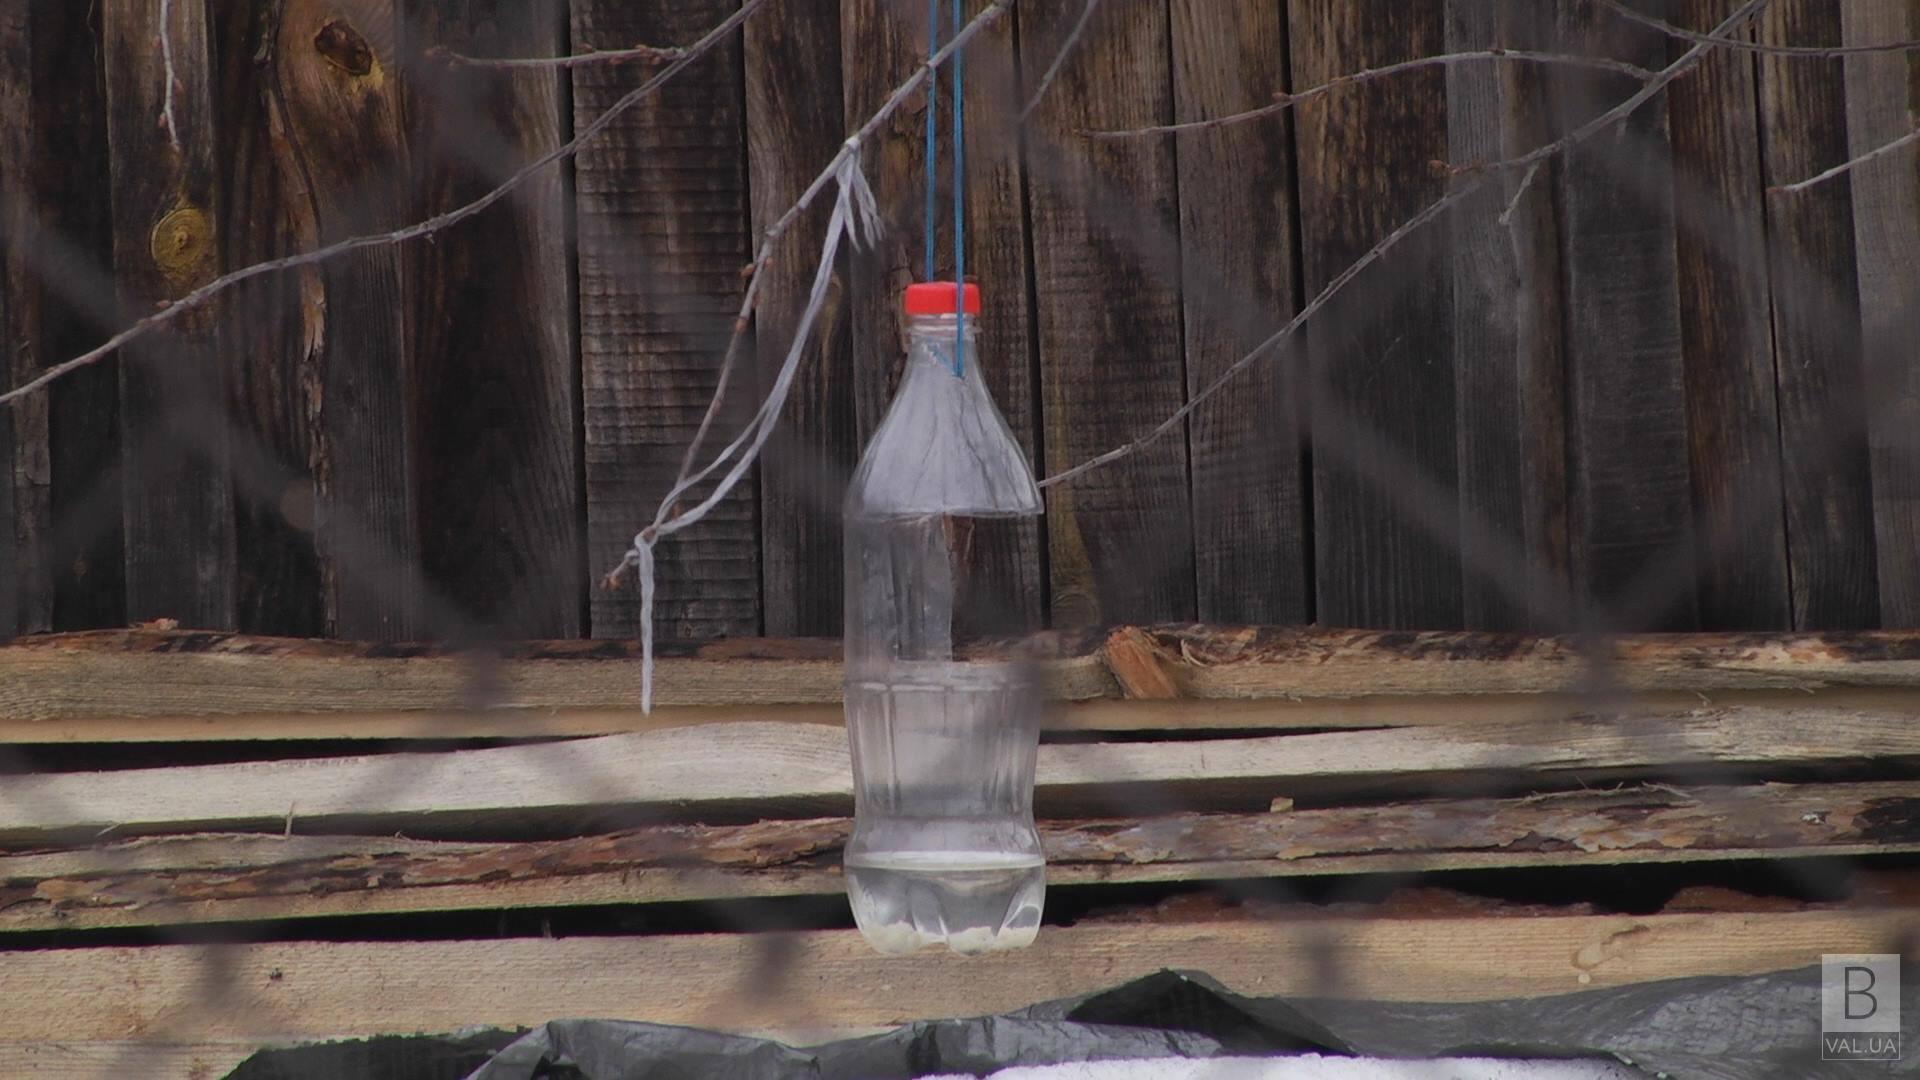 Из-за прорыва трубы на Шерстянке 12 семей остались без водоснабжения ВИДЕО